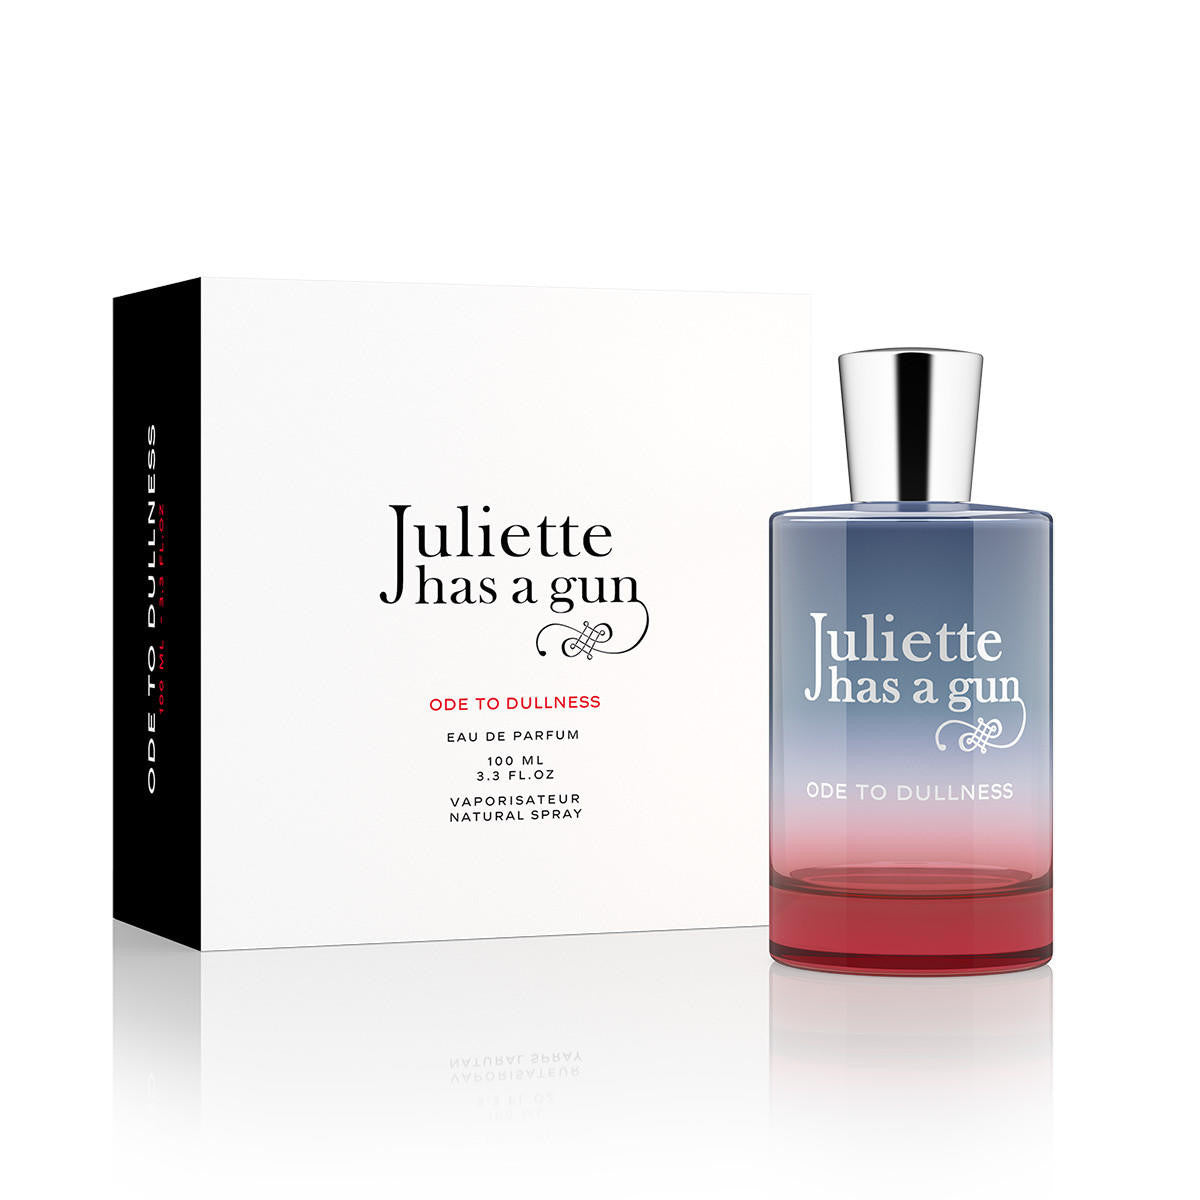  Juliette Ode To Dullness Eau de Parfum 